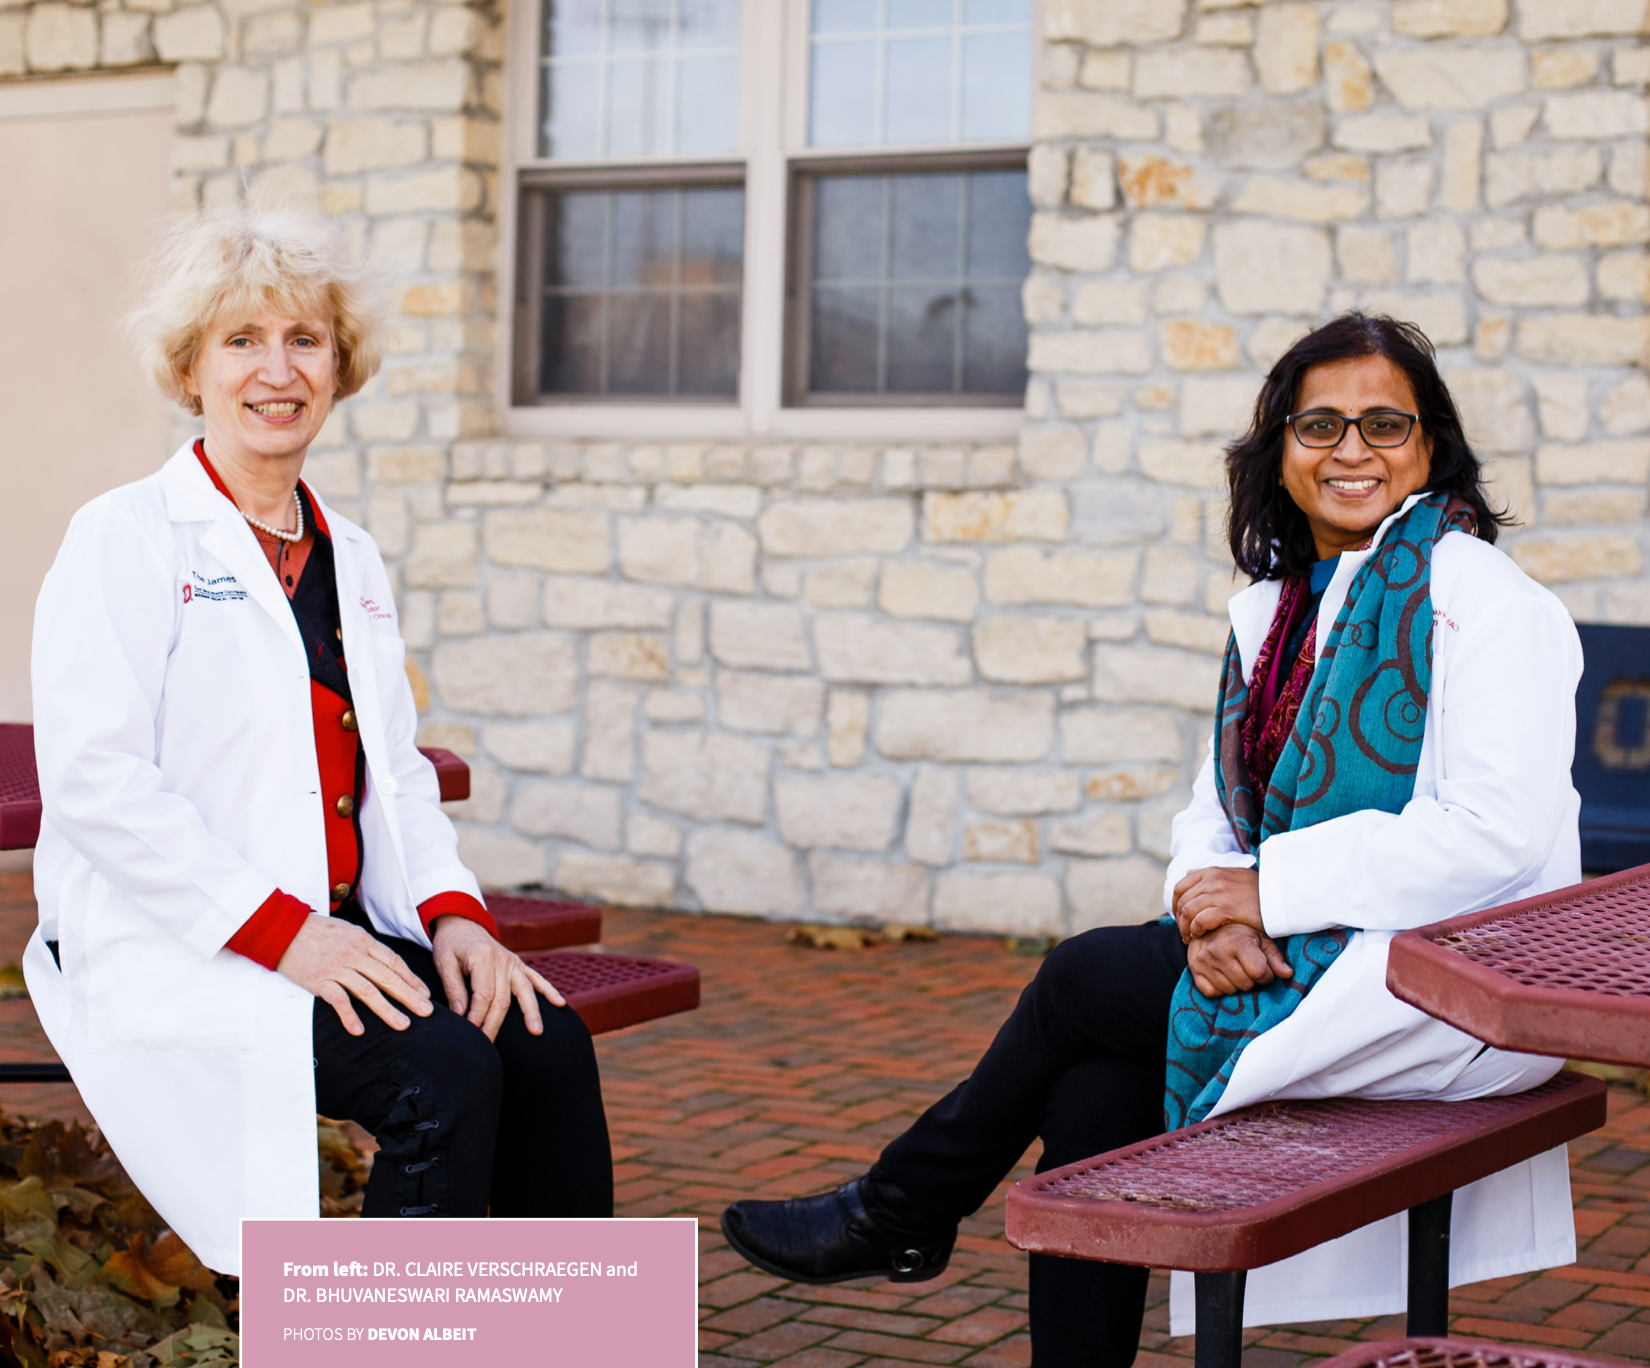 From left: Dr. Claire Verschraegen and Dr. Bhuvaneswari Ramaswamy. Photos by Devon Albeit.